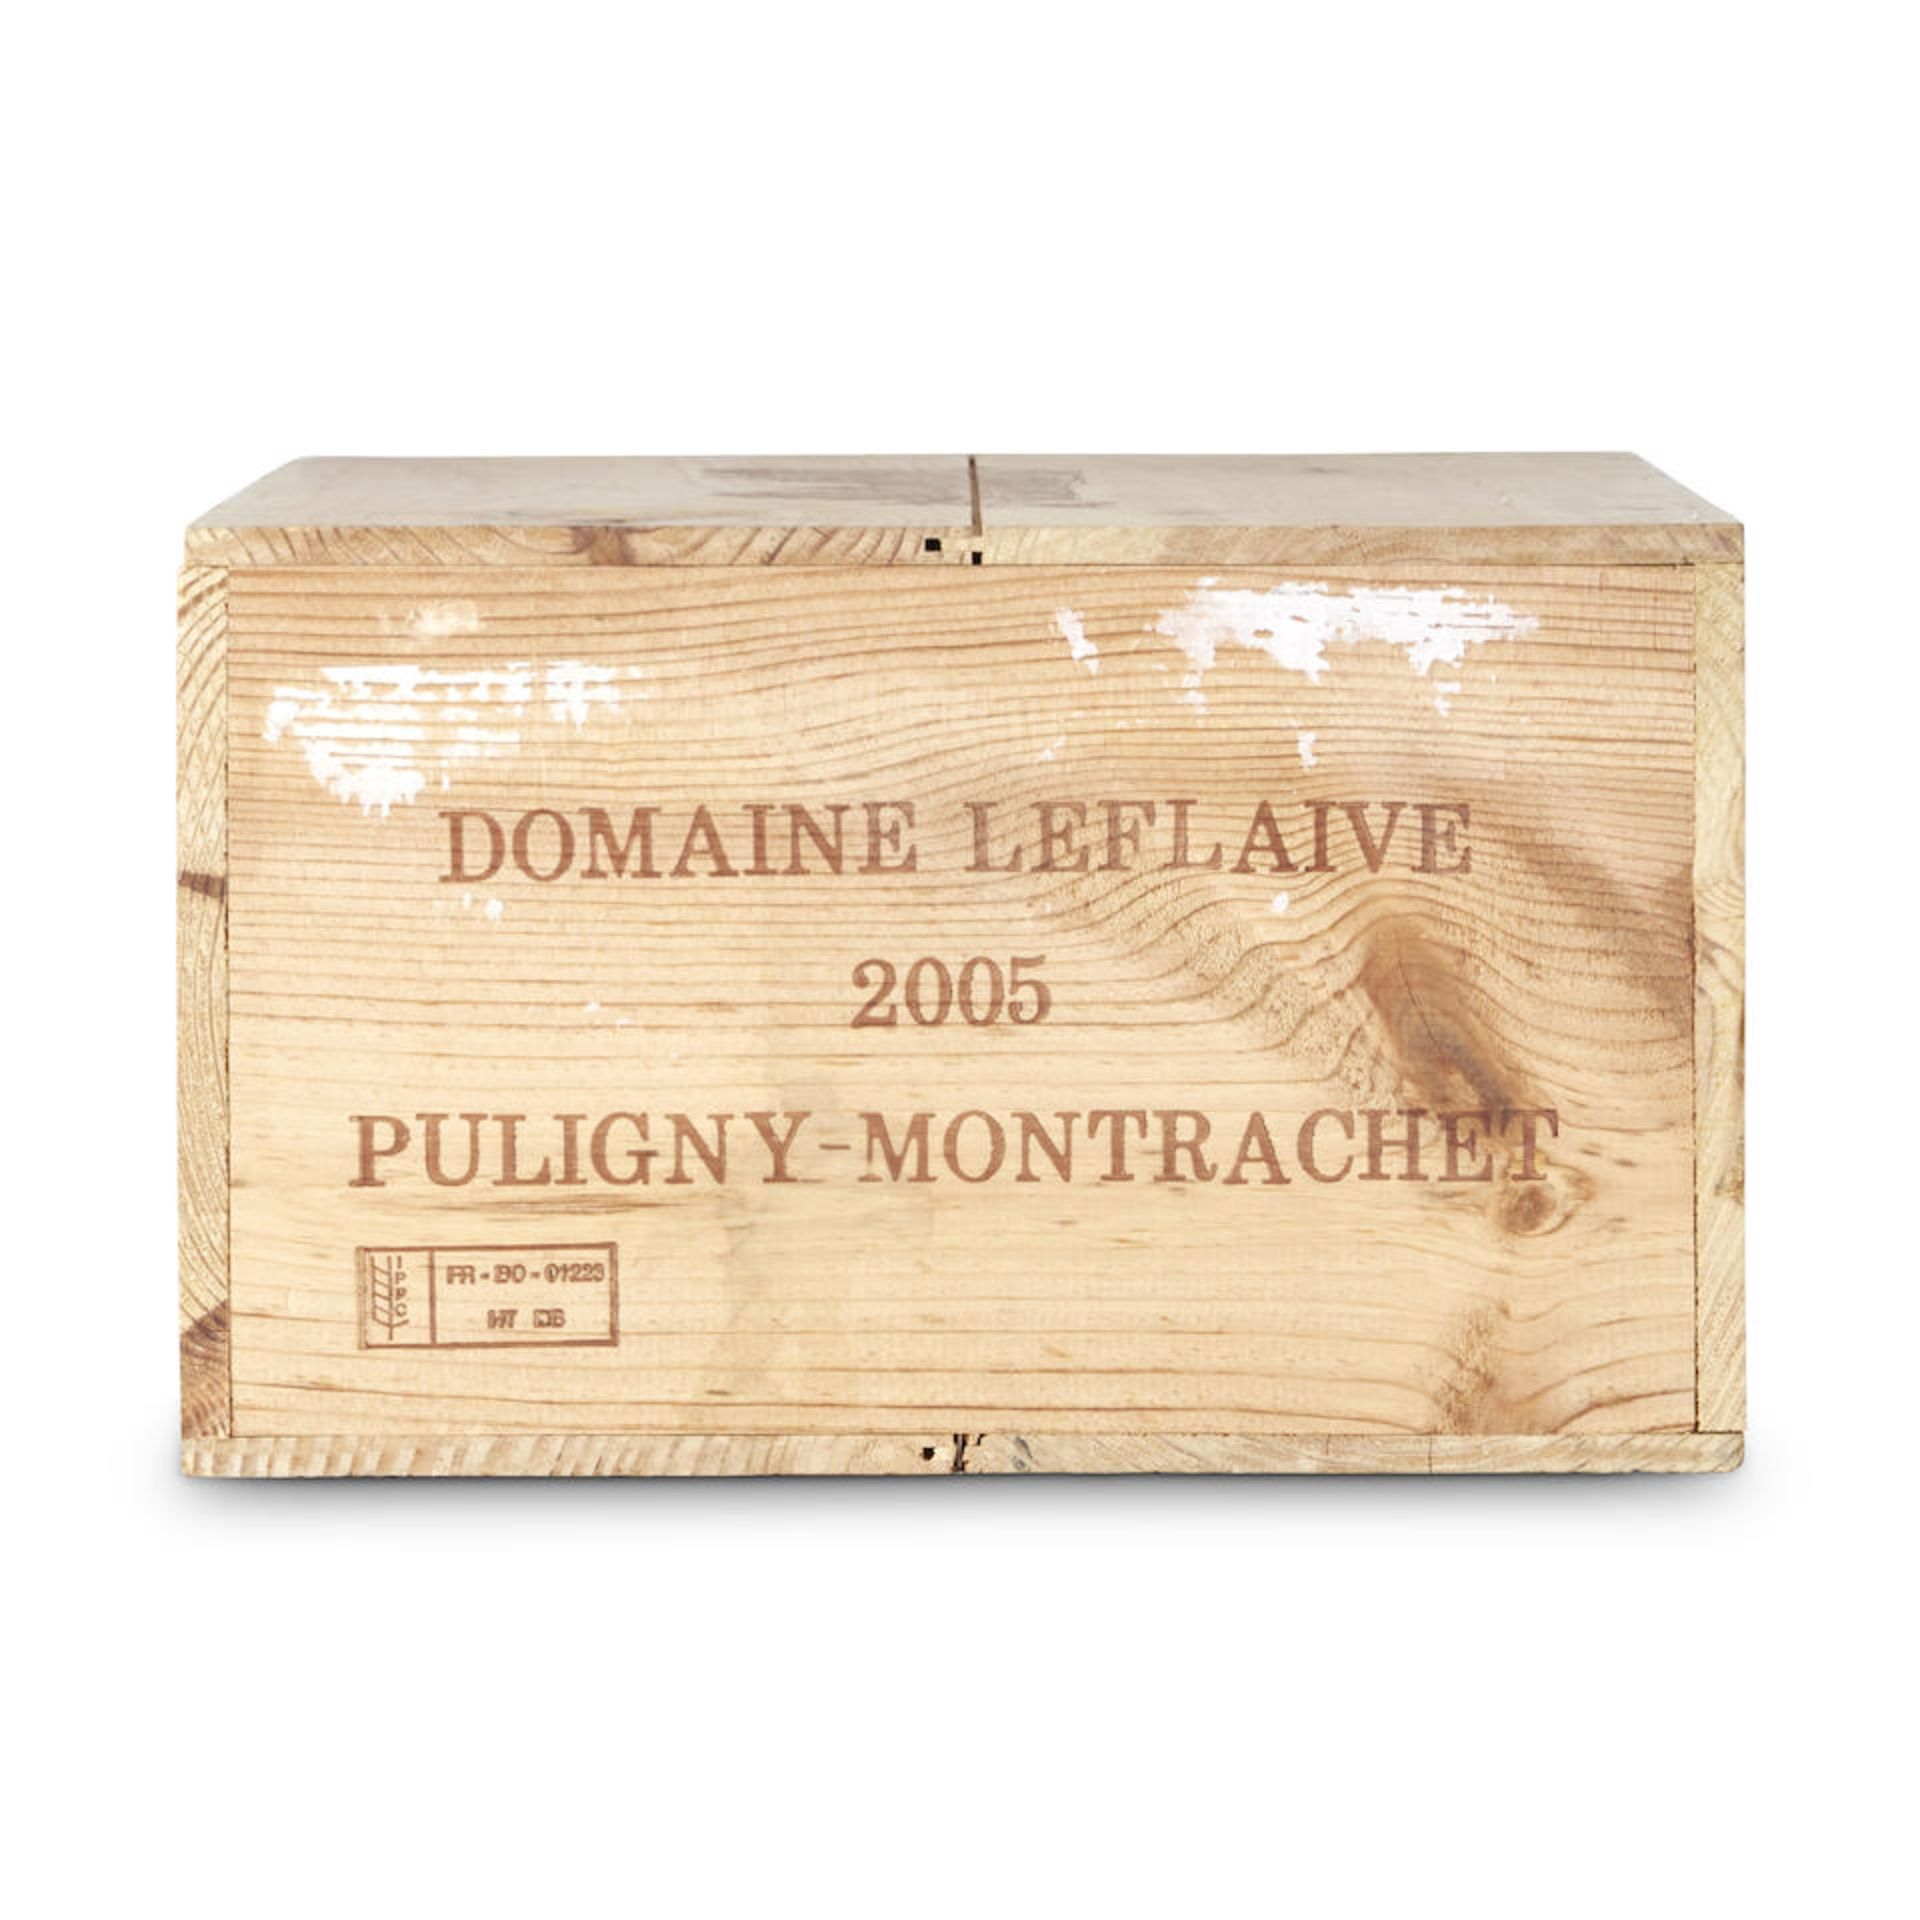 Leflaive Puligny Montrachet 2005 (12 bottles)